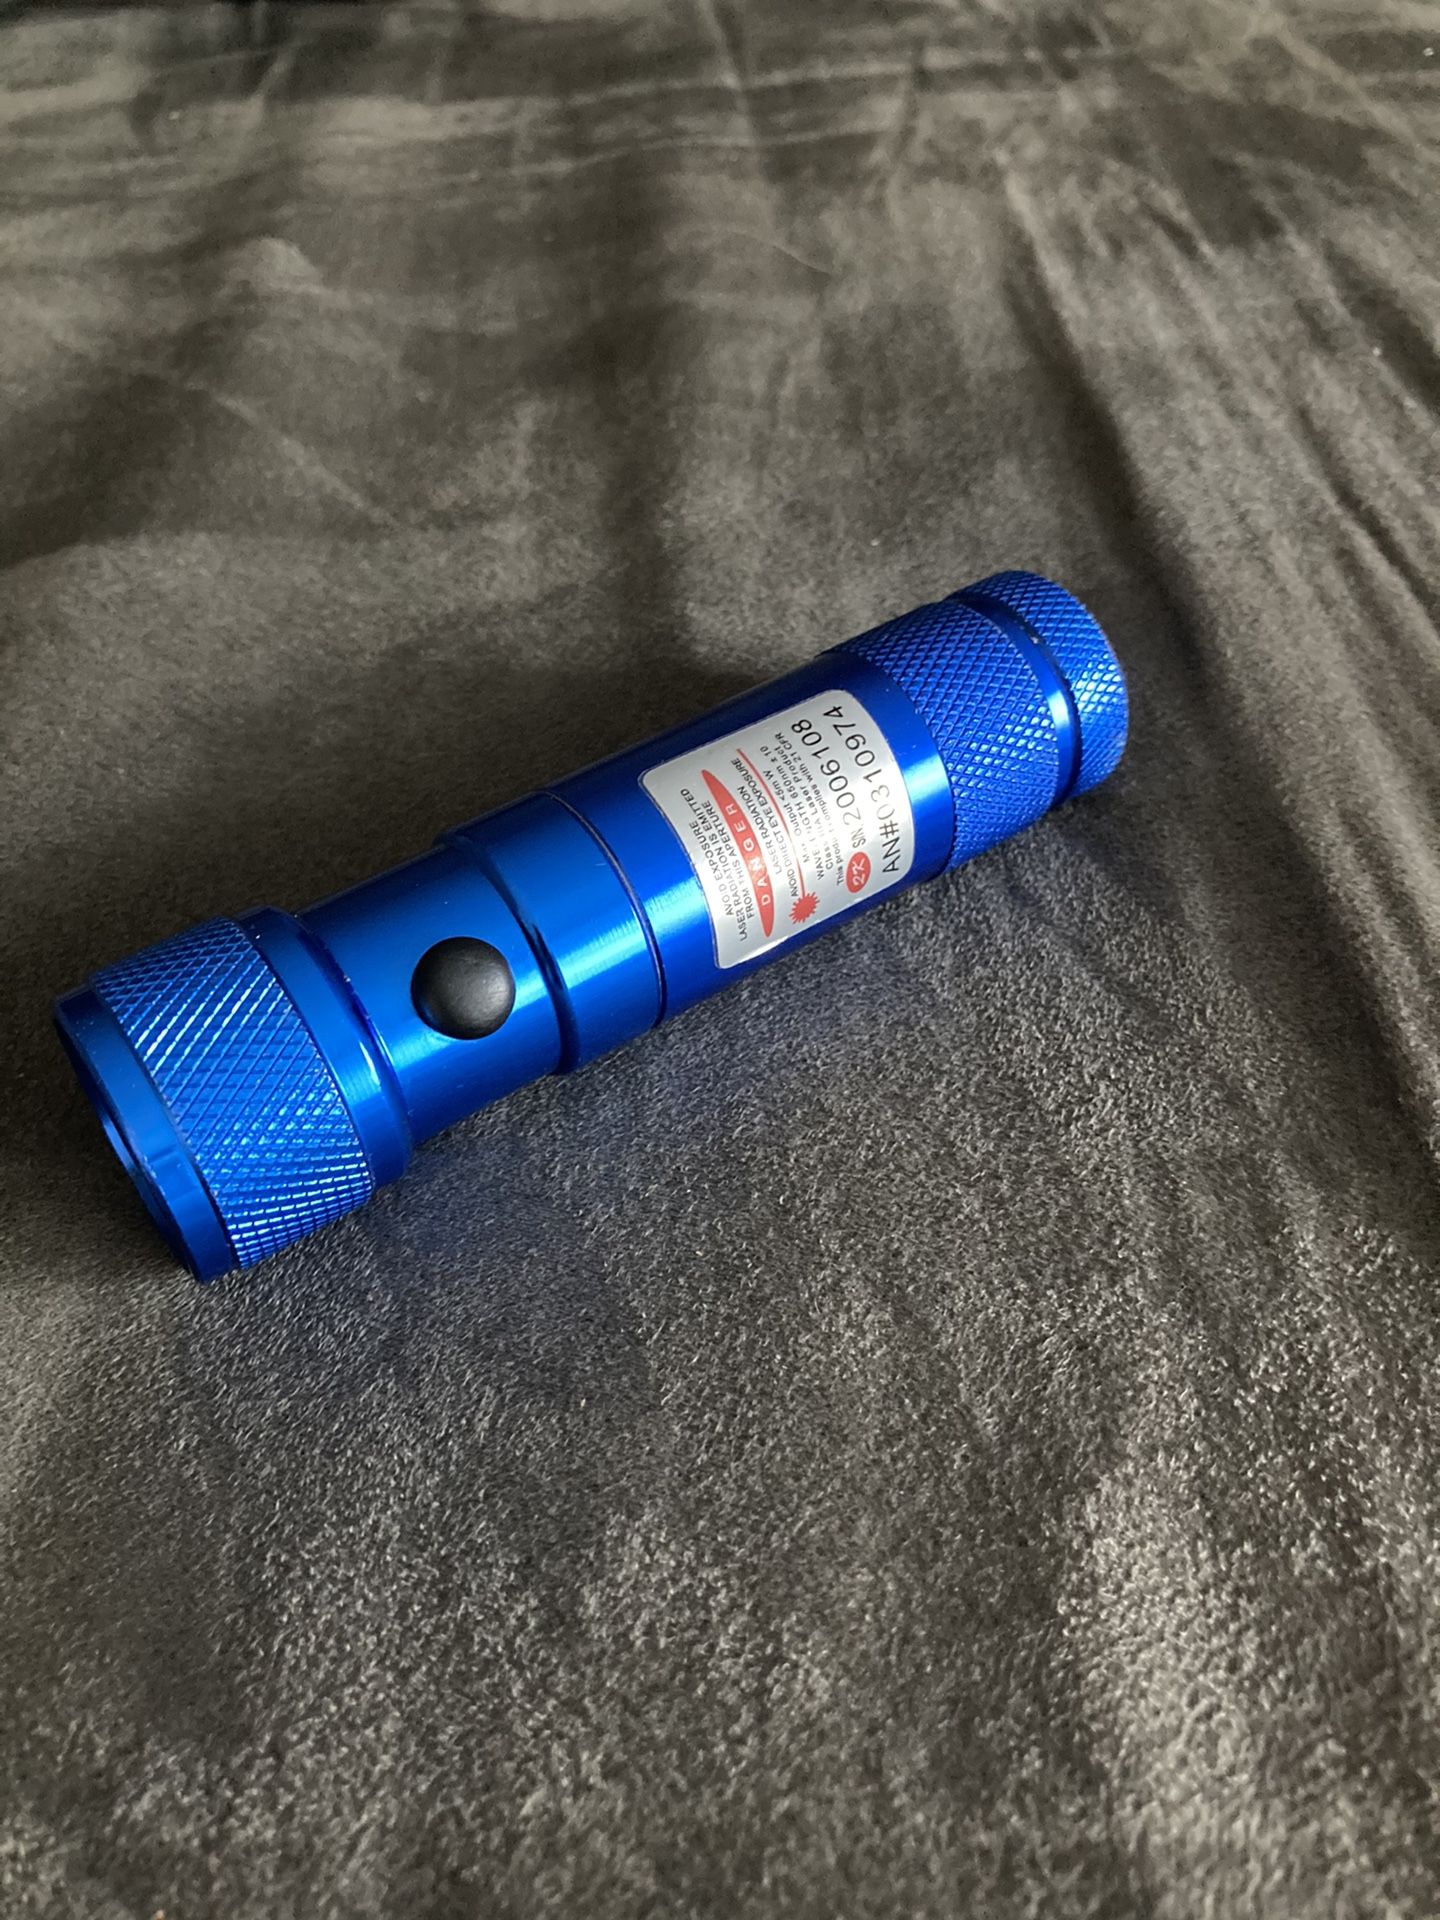 Flashlight laser pointer